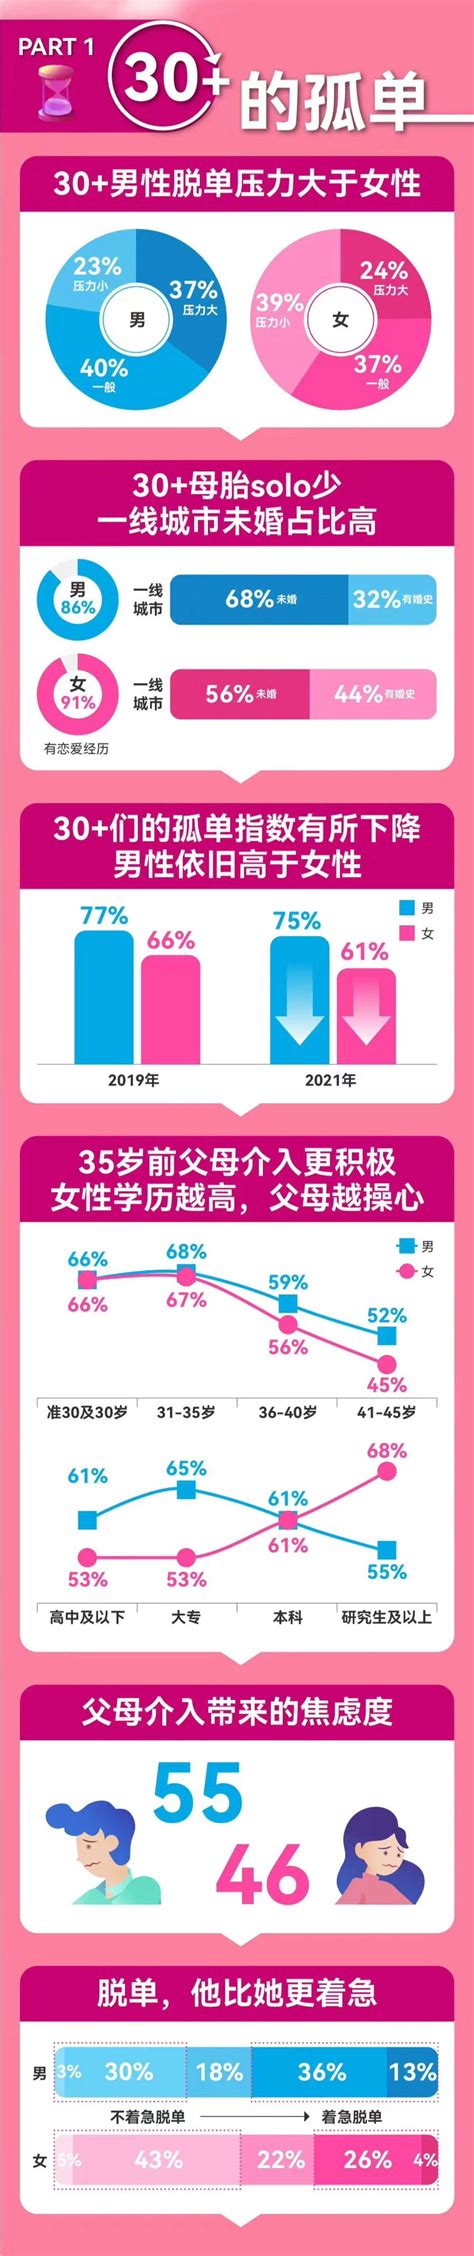 中国人婚恋调查 中国男女婚恋观报告_华夏智能网